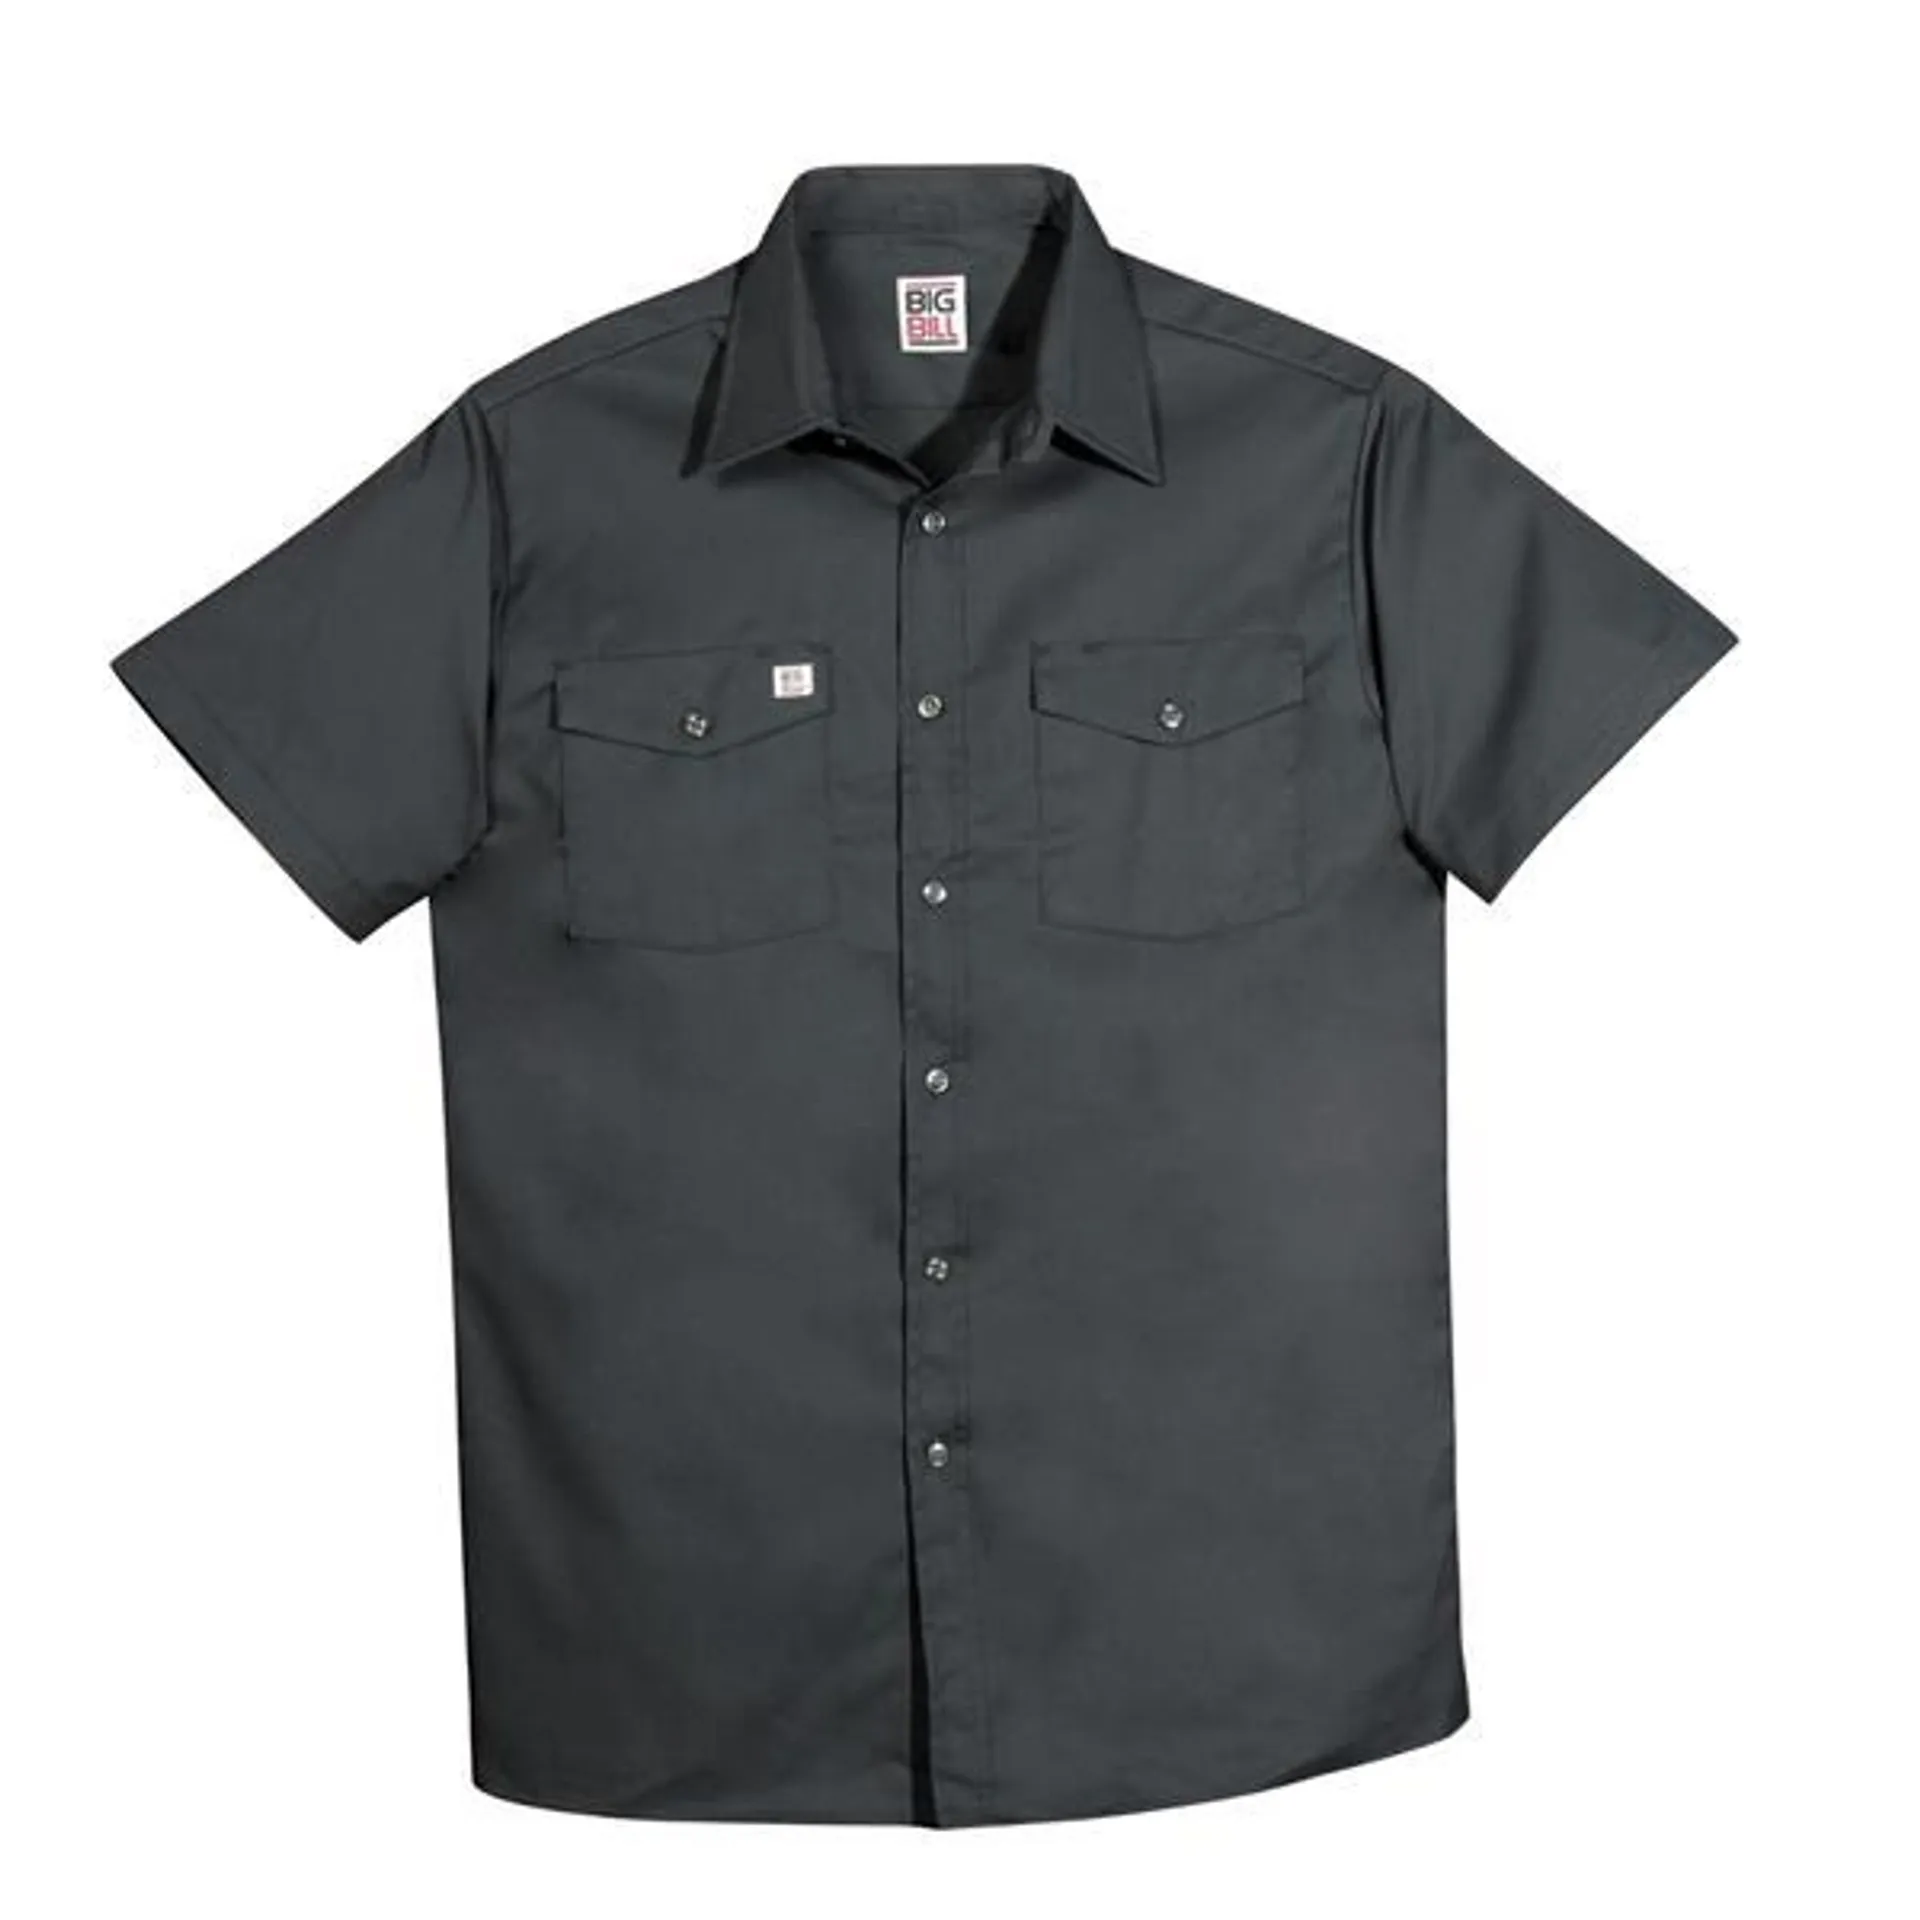 Men's 137 Button-up Short Sleeve Work Shirt